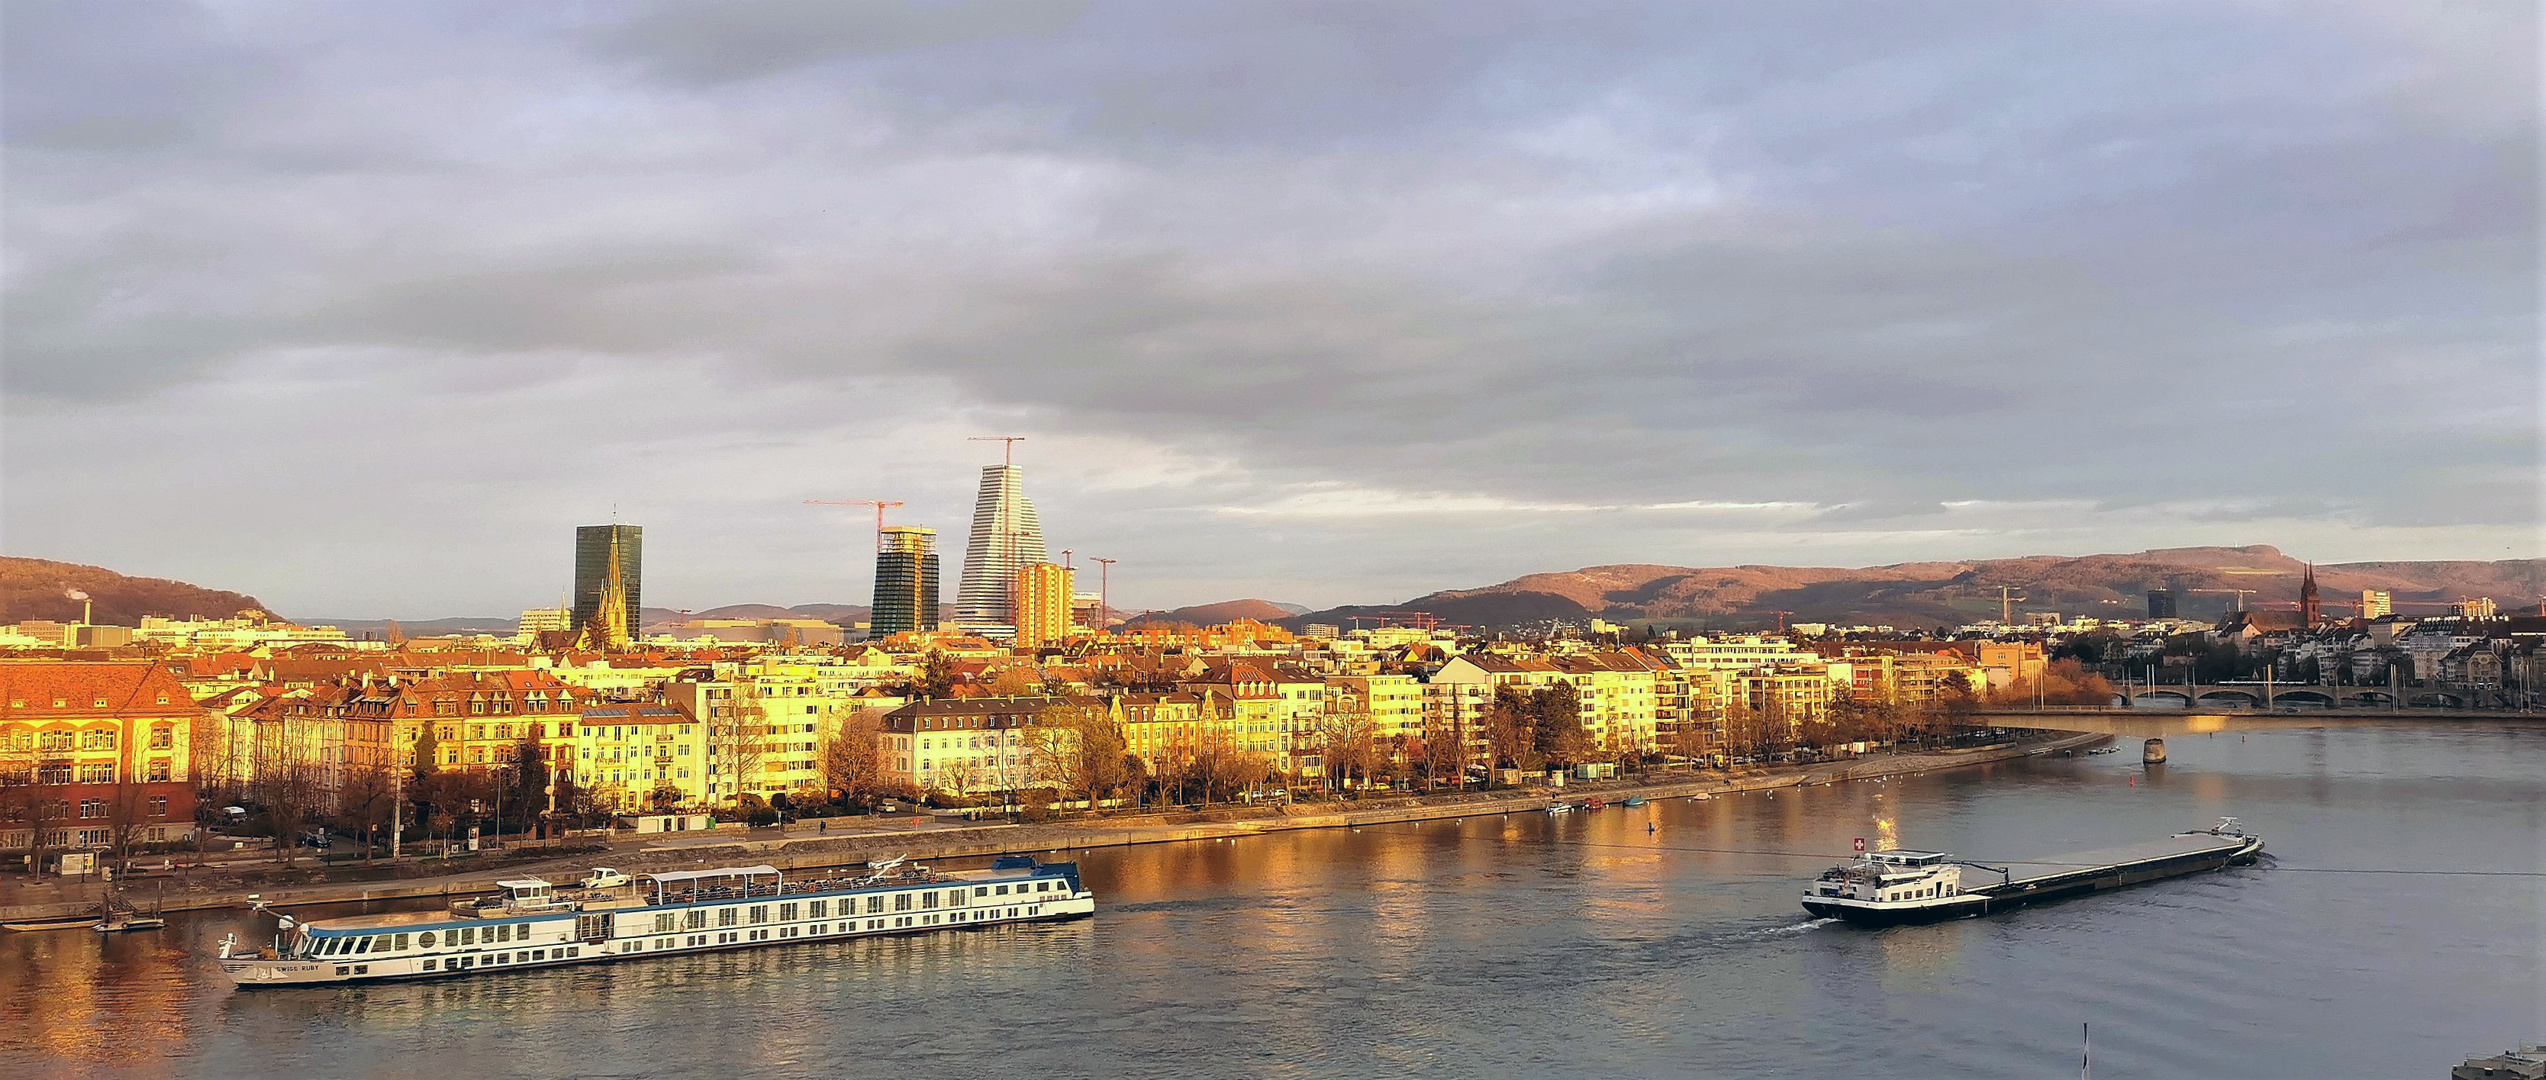 Der Rhein in der Abendsonne